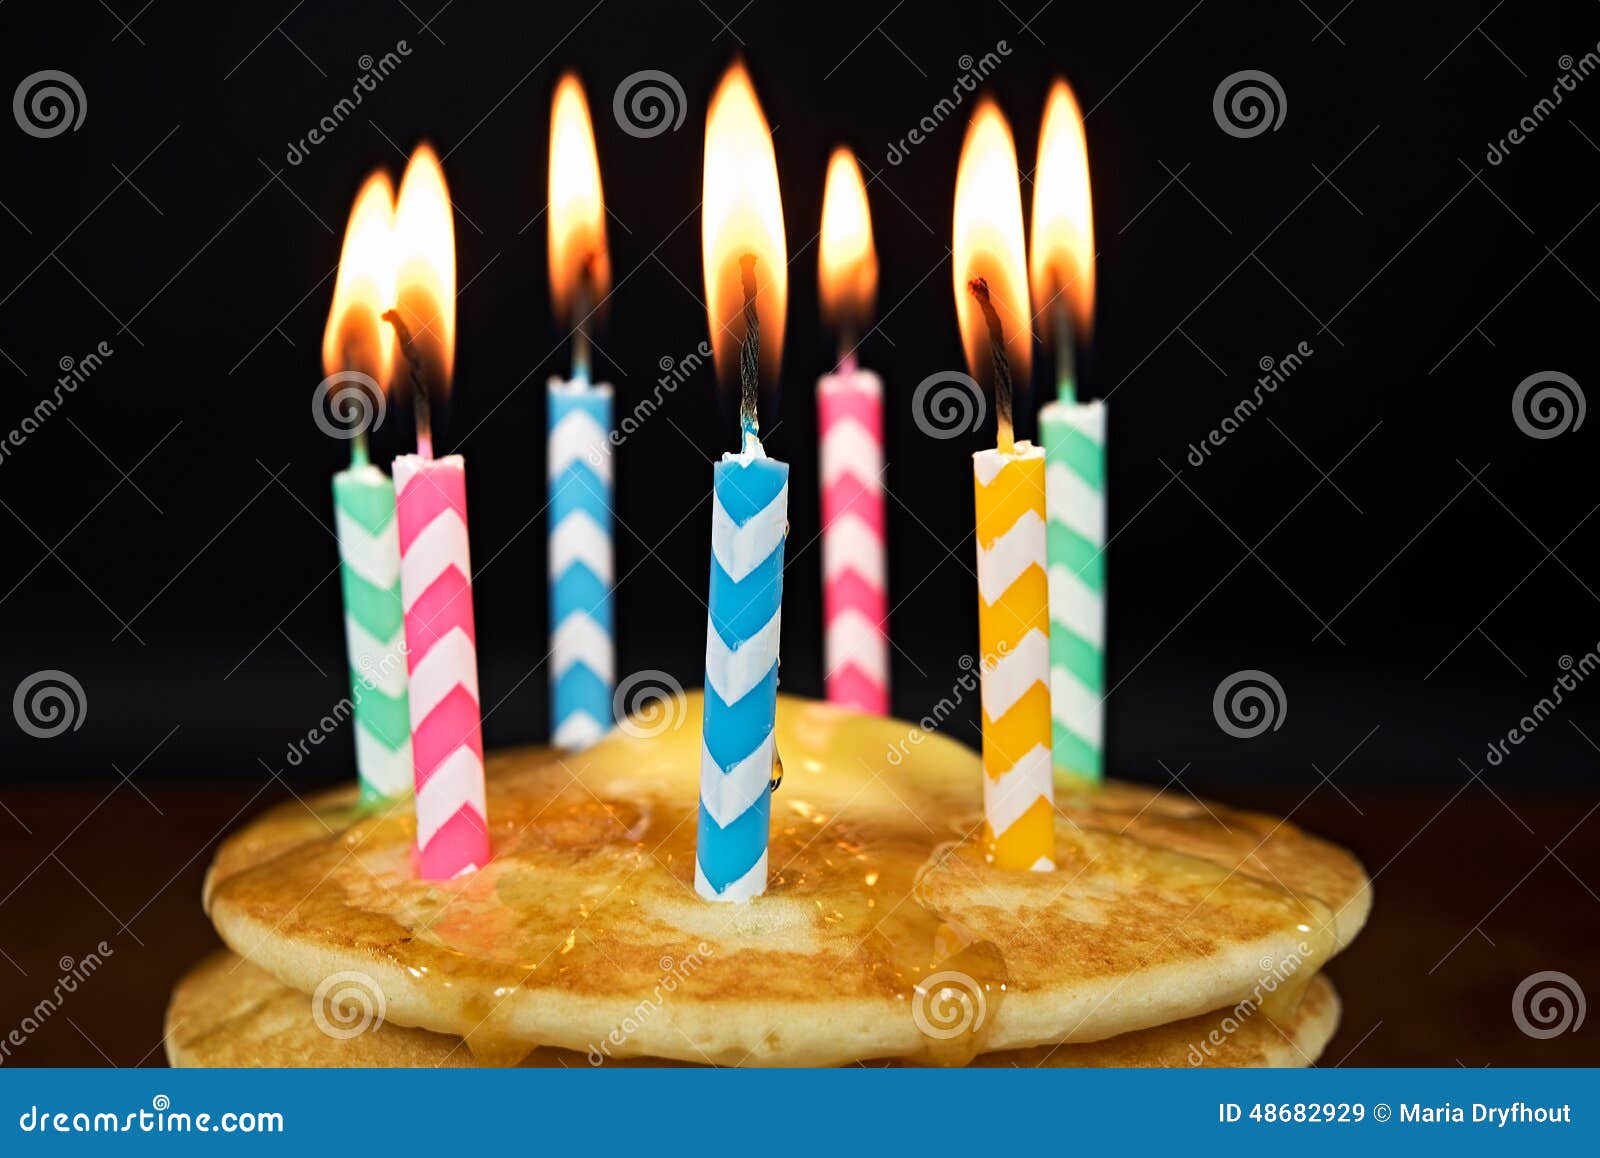 Geburtstagskerzen Auf Kuchen Was Beachten Blog